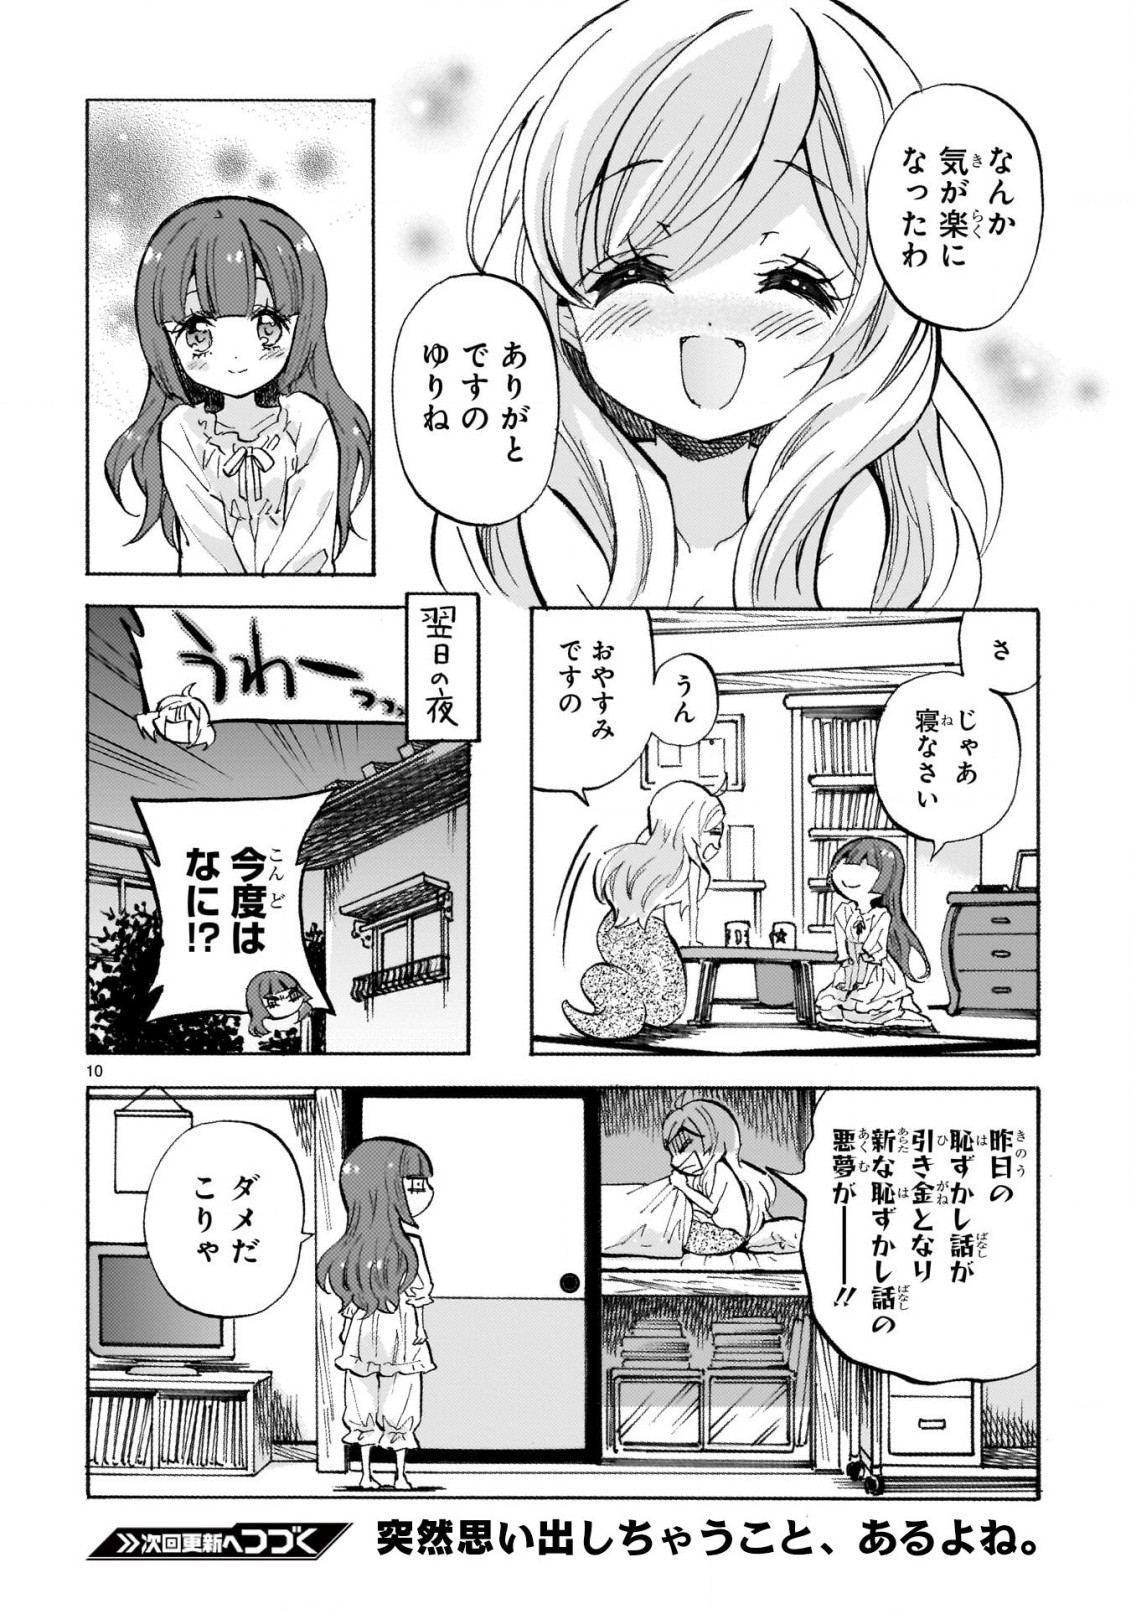 Jashin-chan Dropkick - Chapter 235 - Page 10